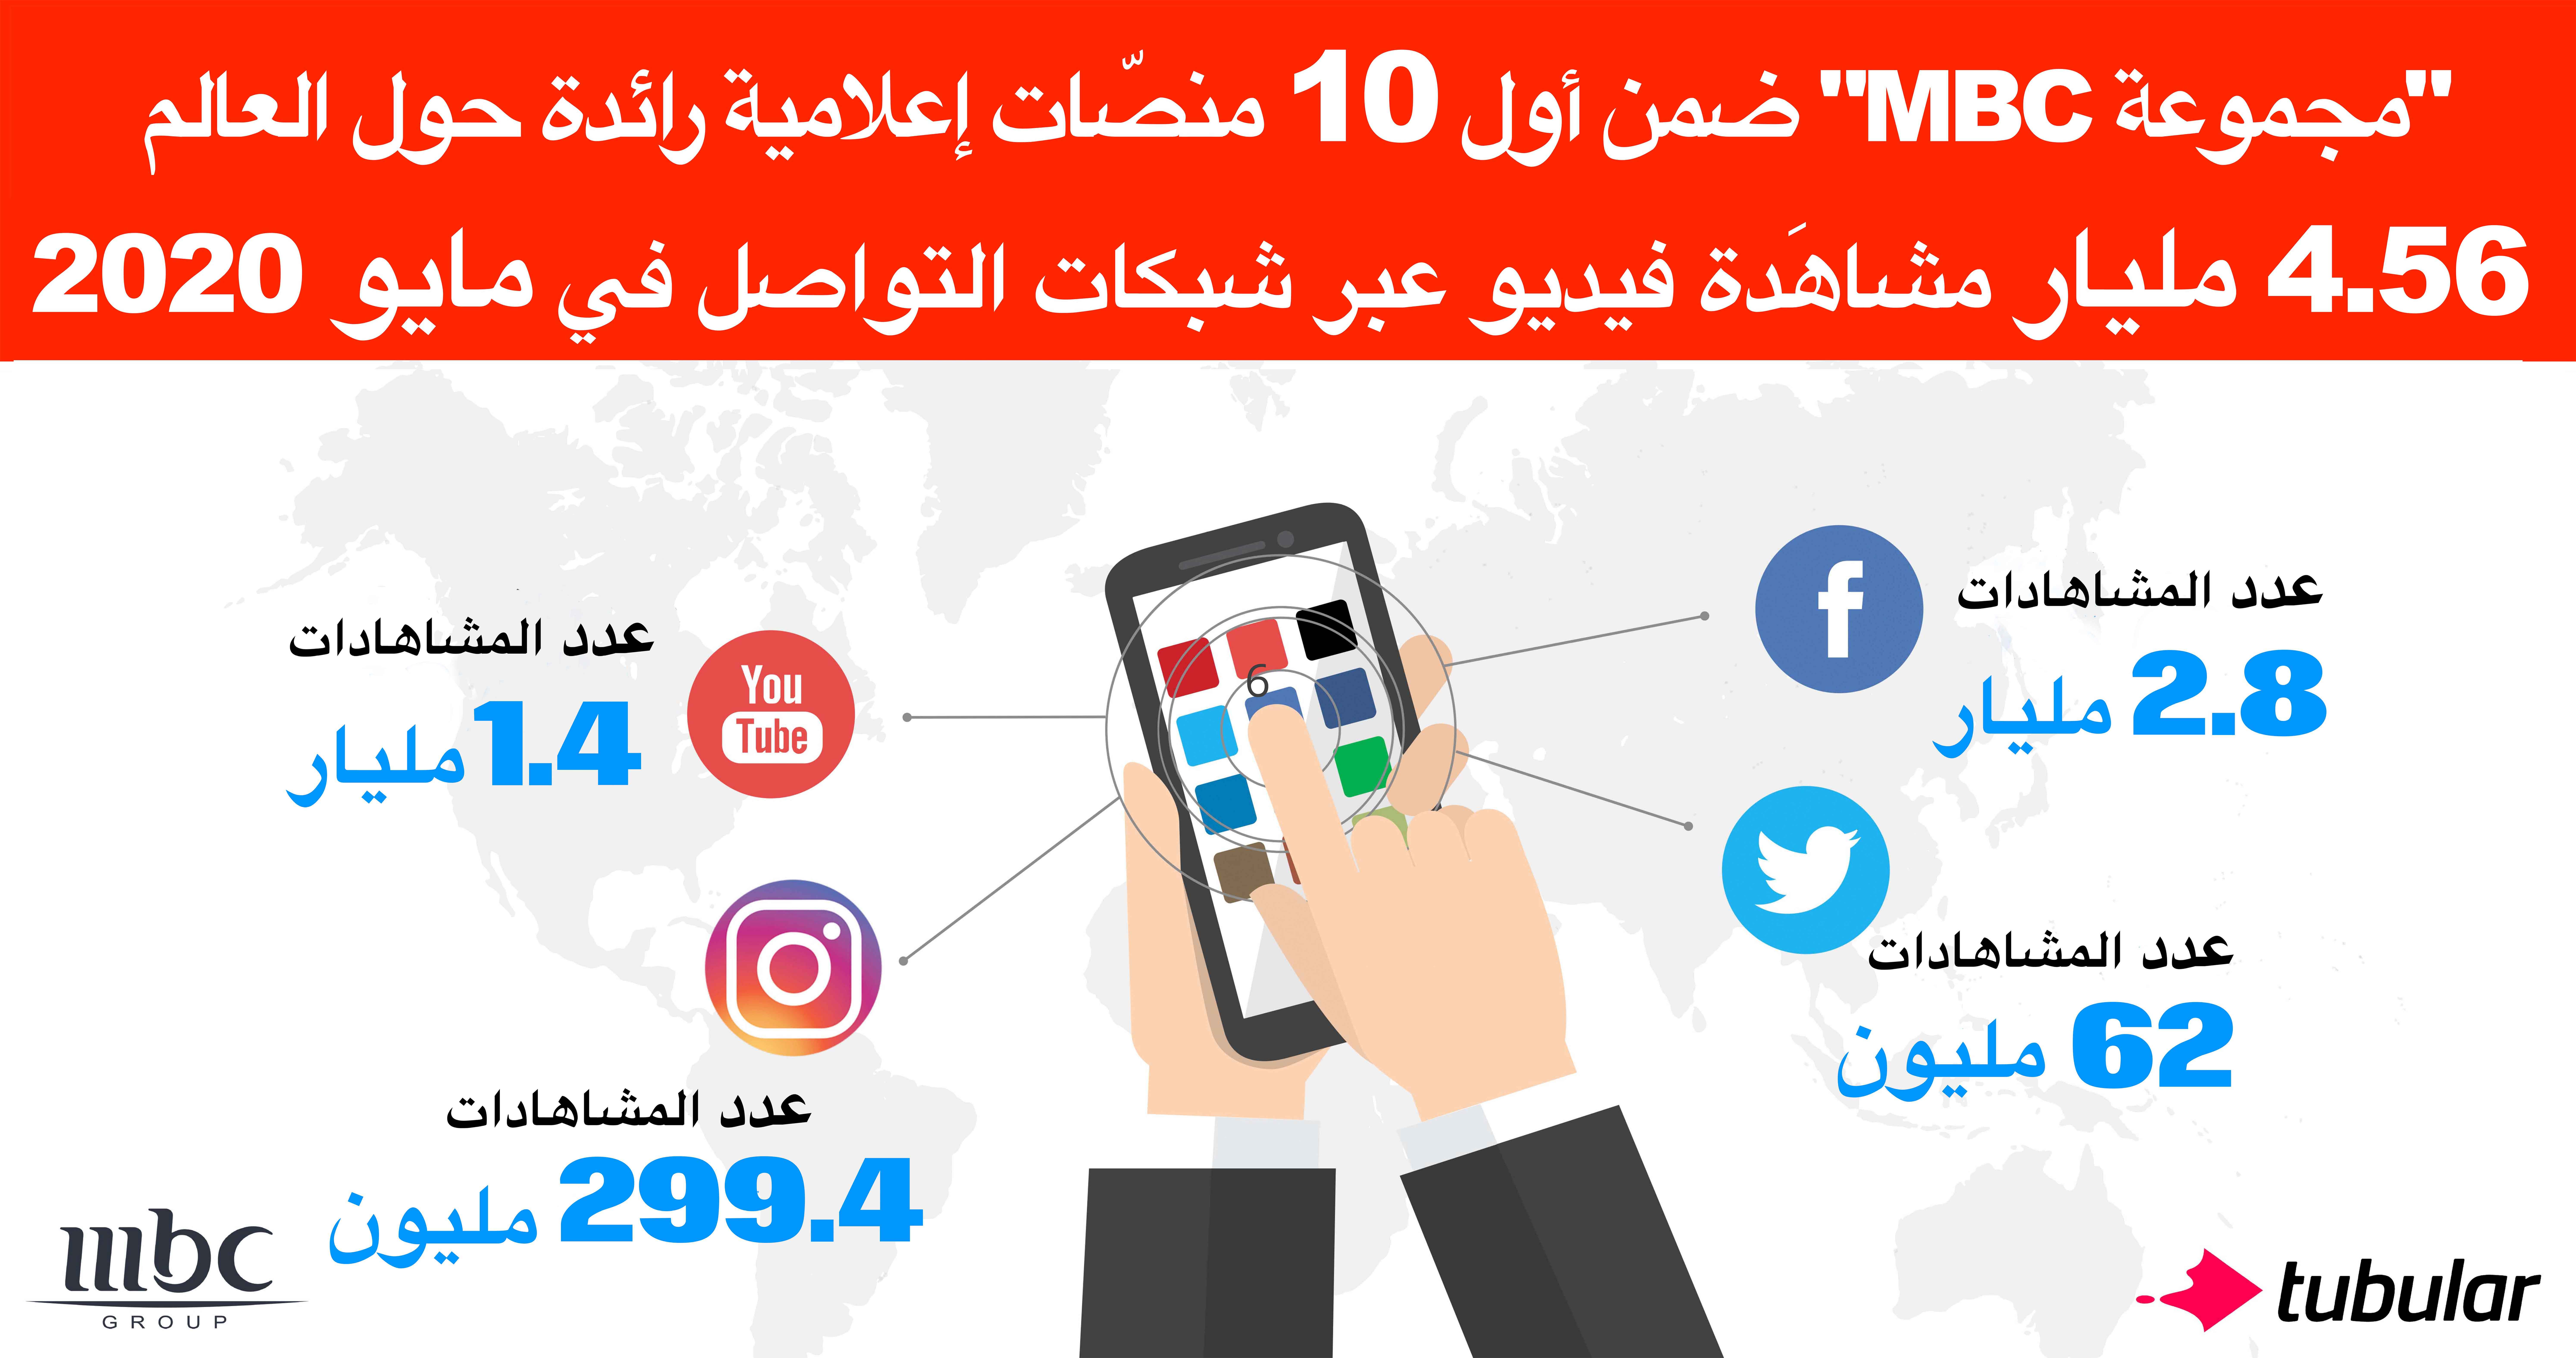  "مجموعة MBC" ضمن أول 10 منصّات إعلامية رائدة عالمياً بأكثر من 4.56 مليار مشاهَدة "فيديو اجتماعي" عبر شبكات التواصل خلال مايو 2020